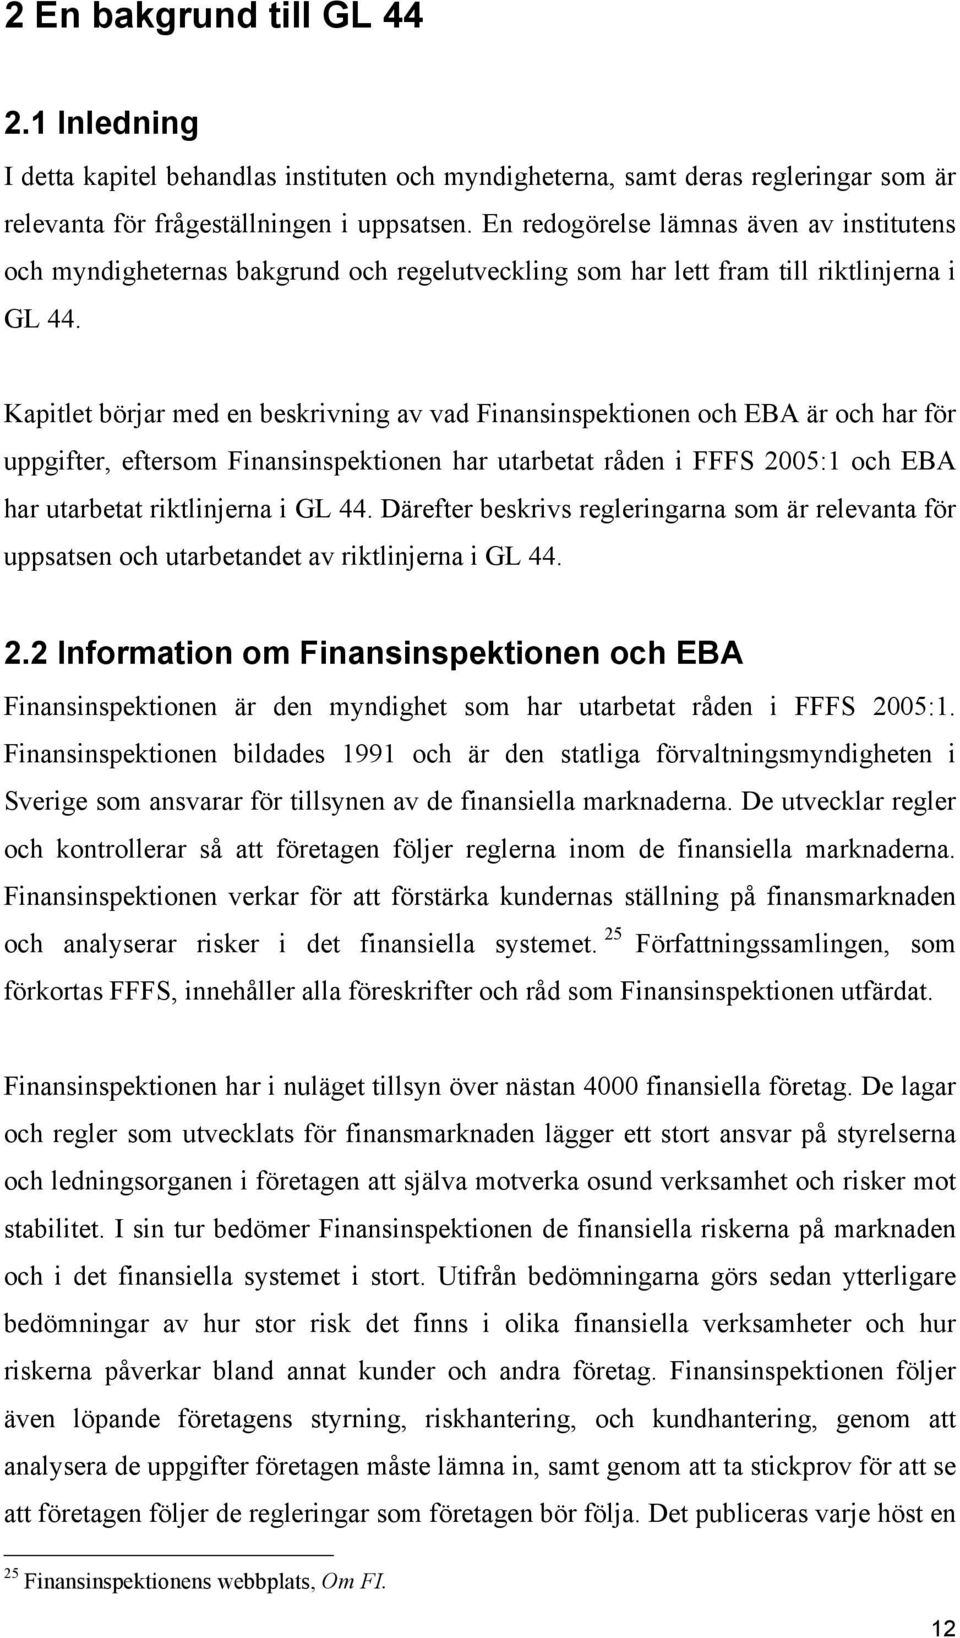 Kapitlet börjar med en beskrivning av vad Finansinspektionen och EBA är och har för uppgifter, eftersom Finansinspektionen har utarbetat råden i FFFS 2005:1 och EBA har utarbetat riktlinjerna i GL 44.